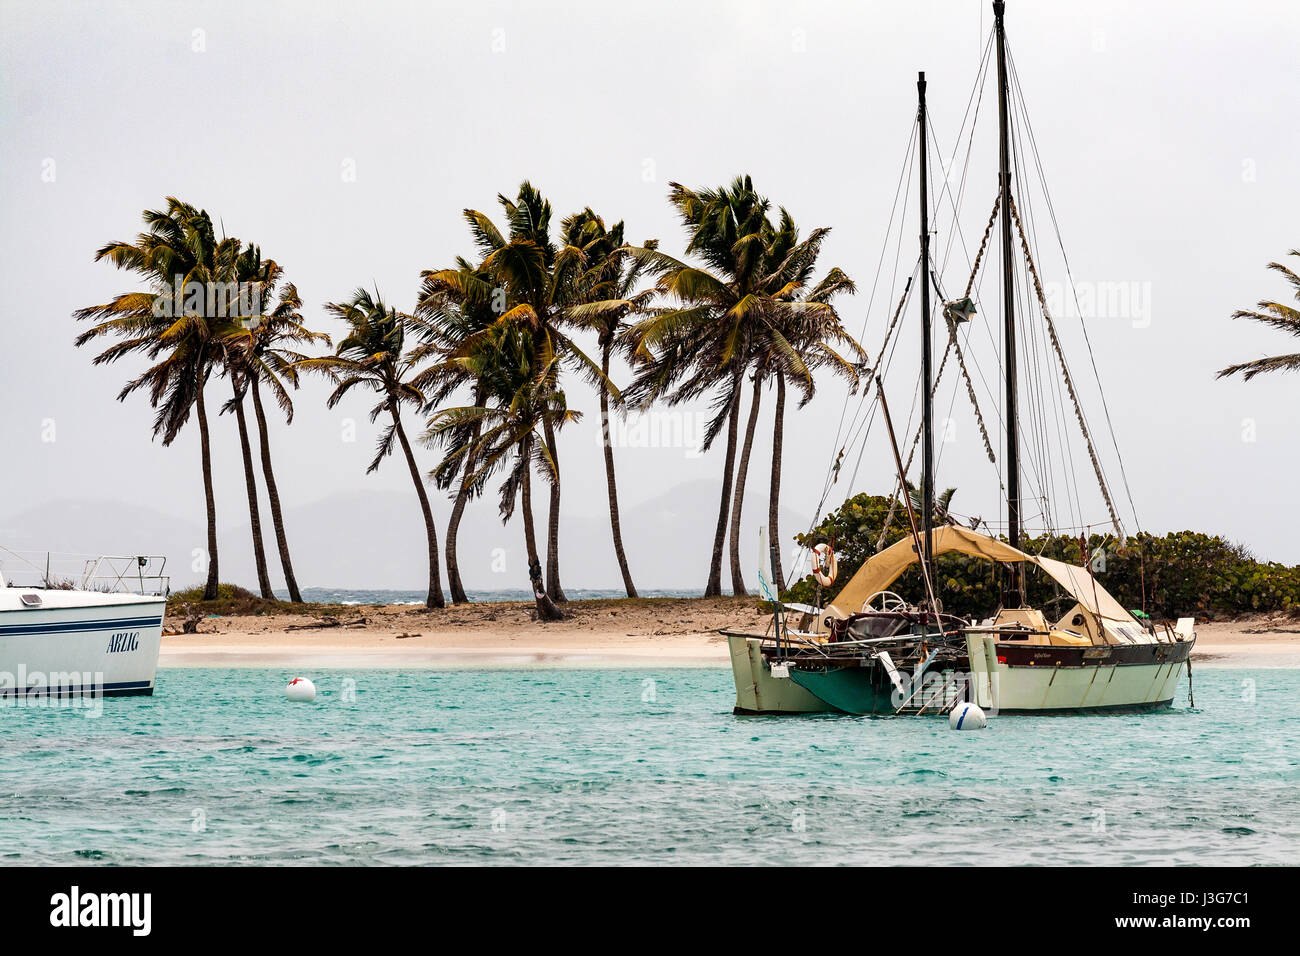 Catamarán atracado en Salt Whistle Bay con palmeras, Mayreau, San Vicente y las Granadinas. Foto de stock